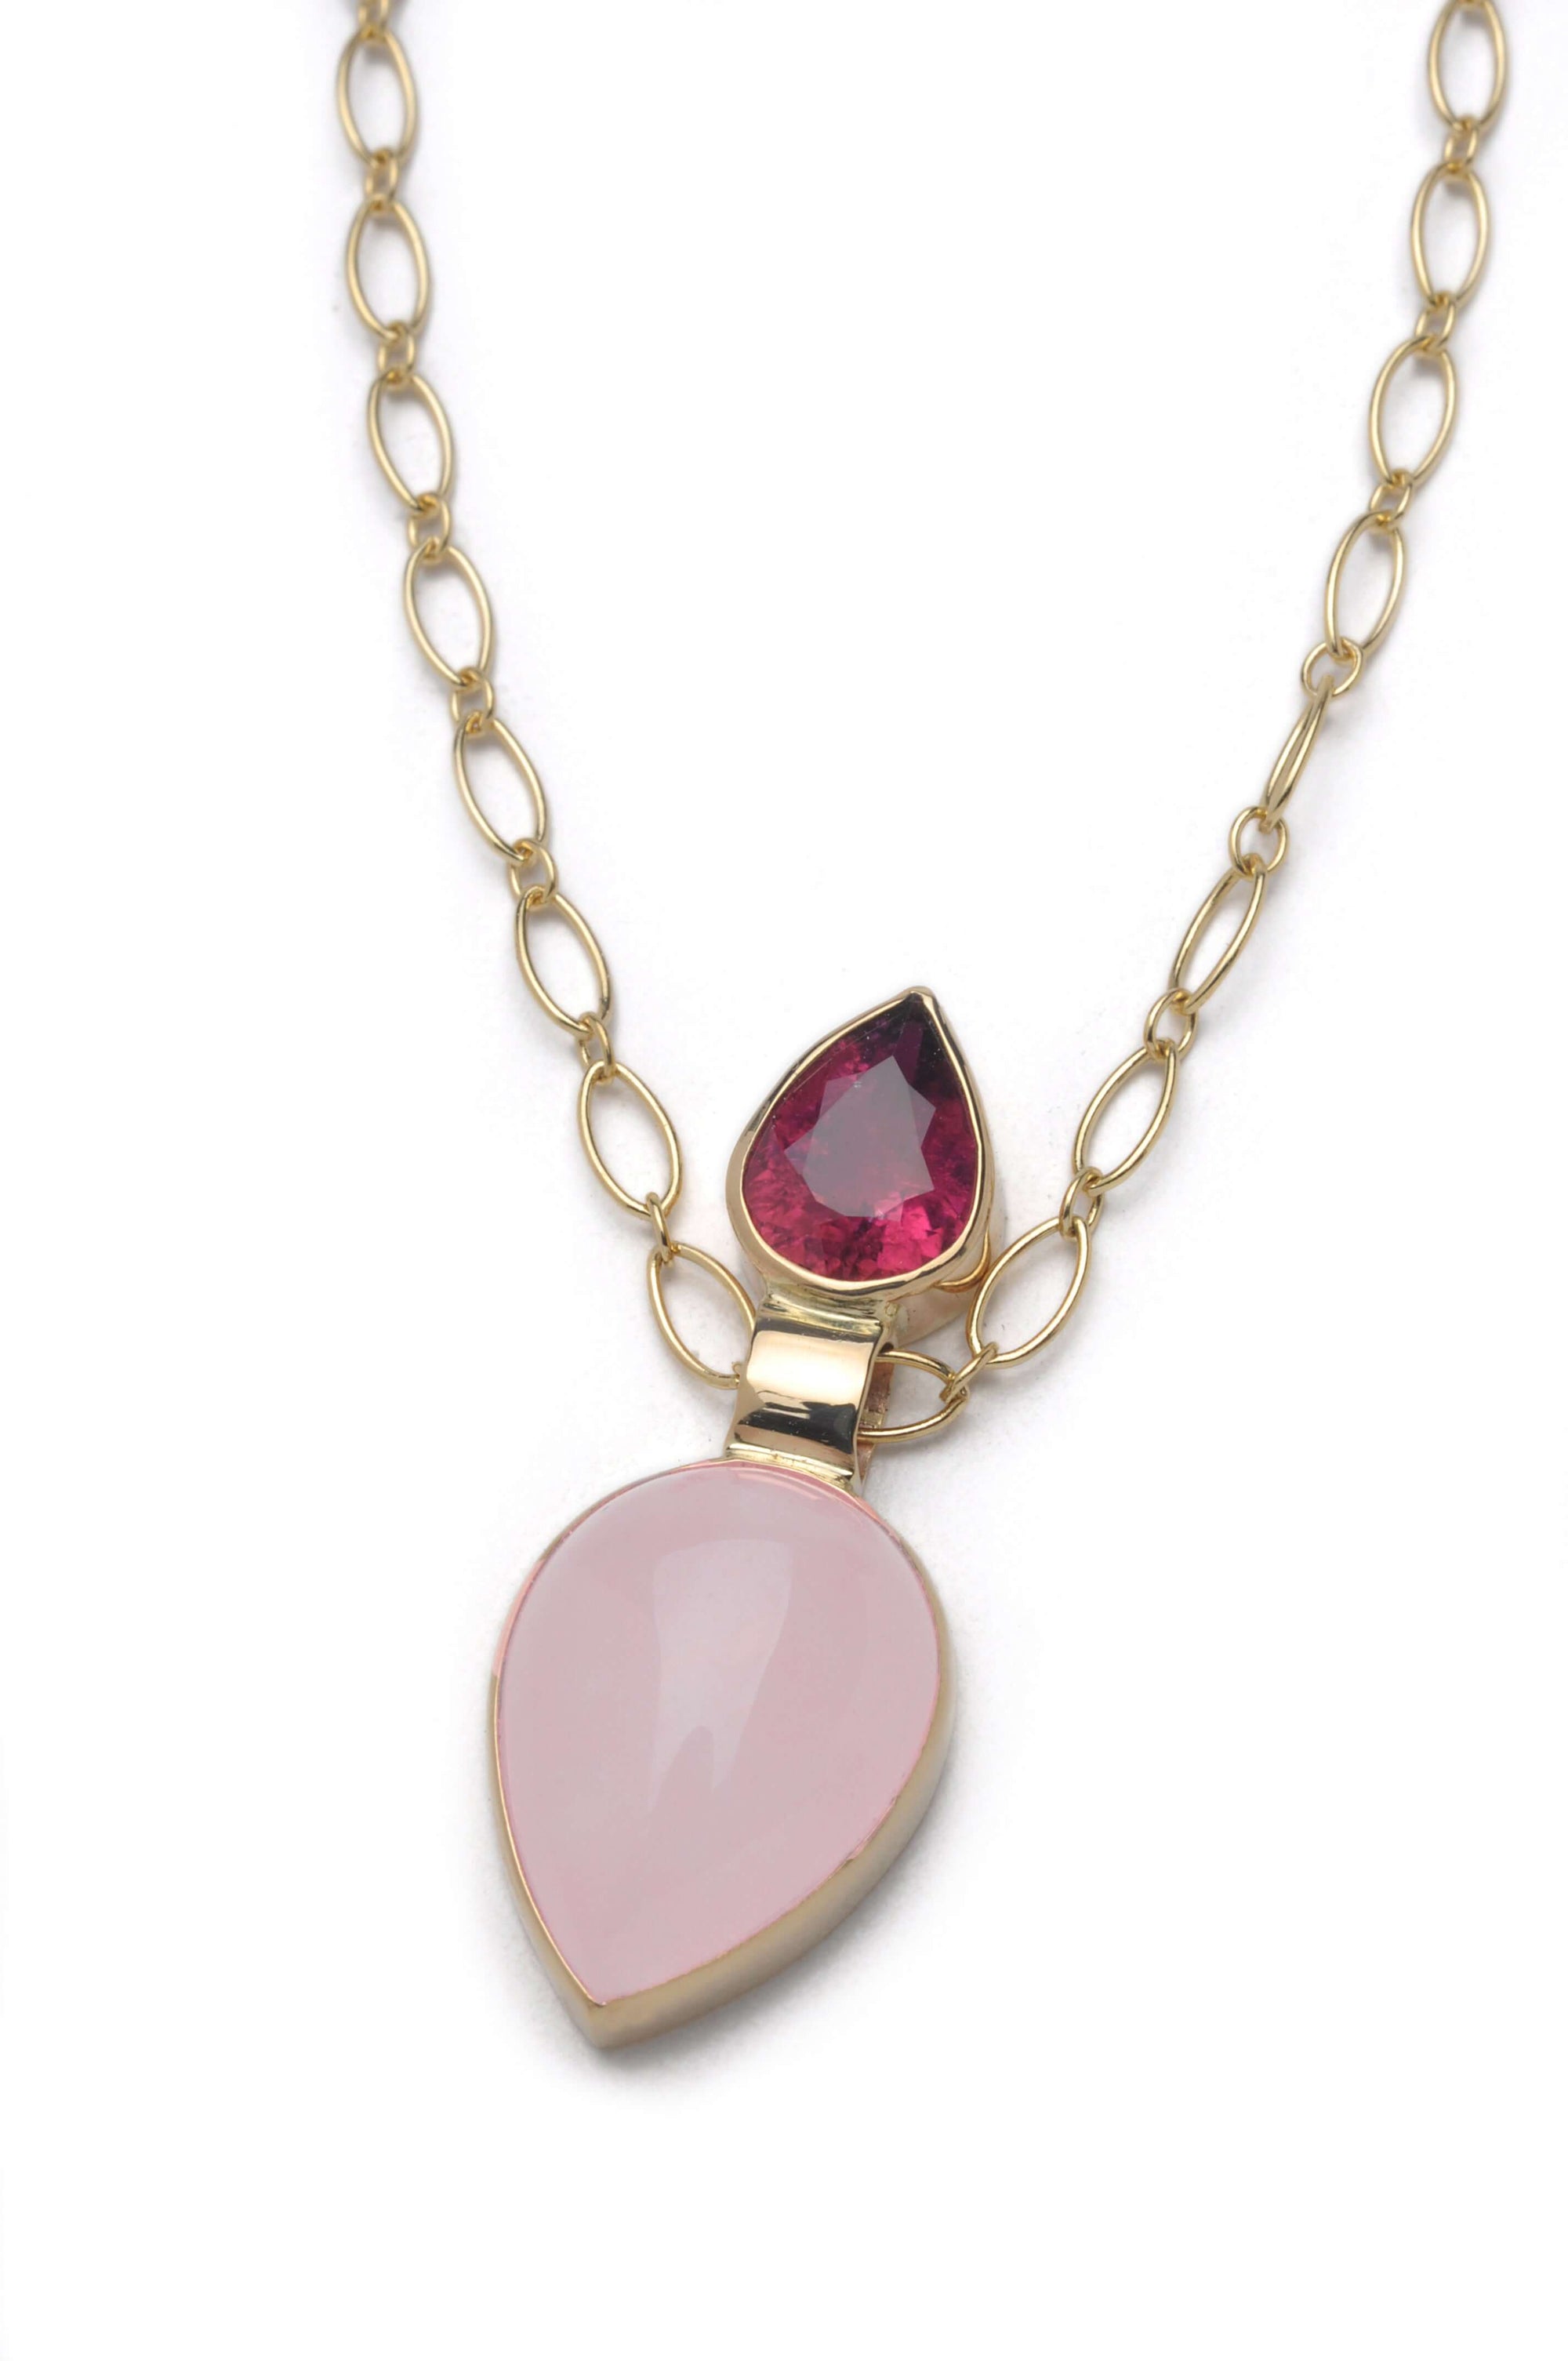 Rose quartz necklace pendant with 14k gold